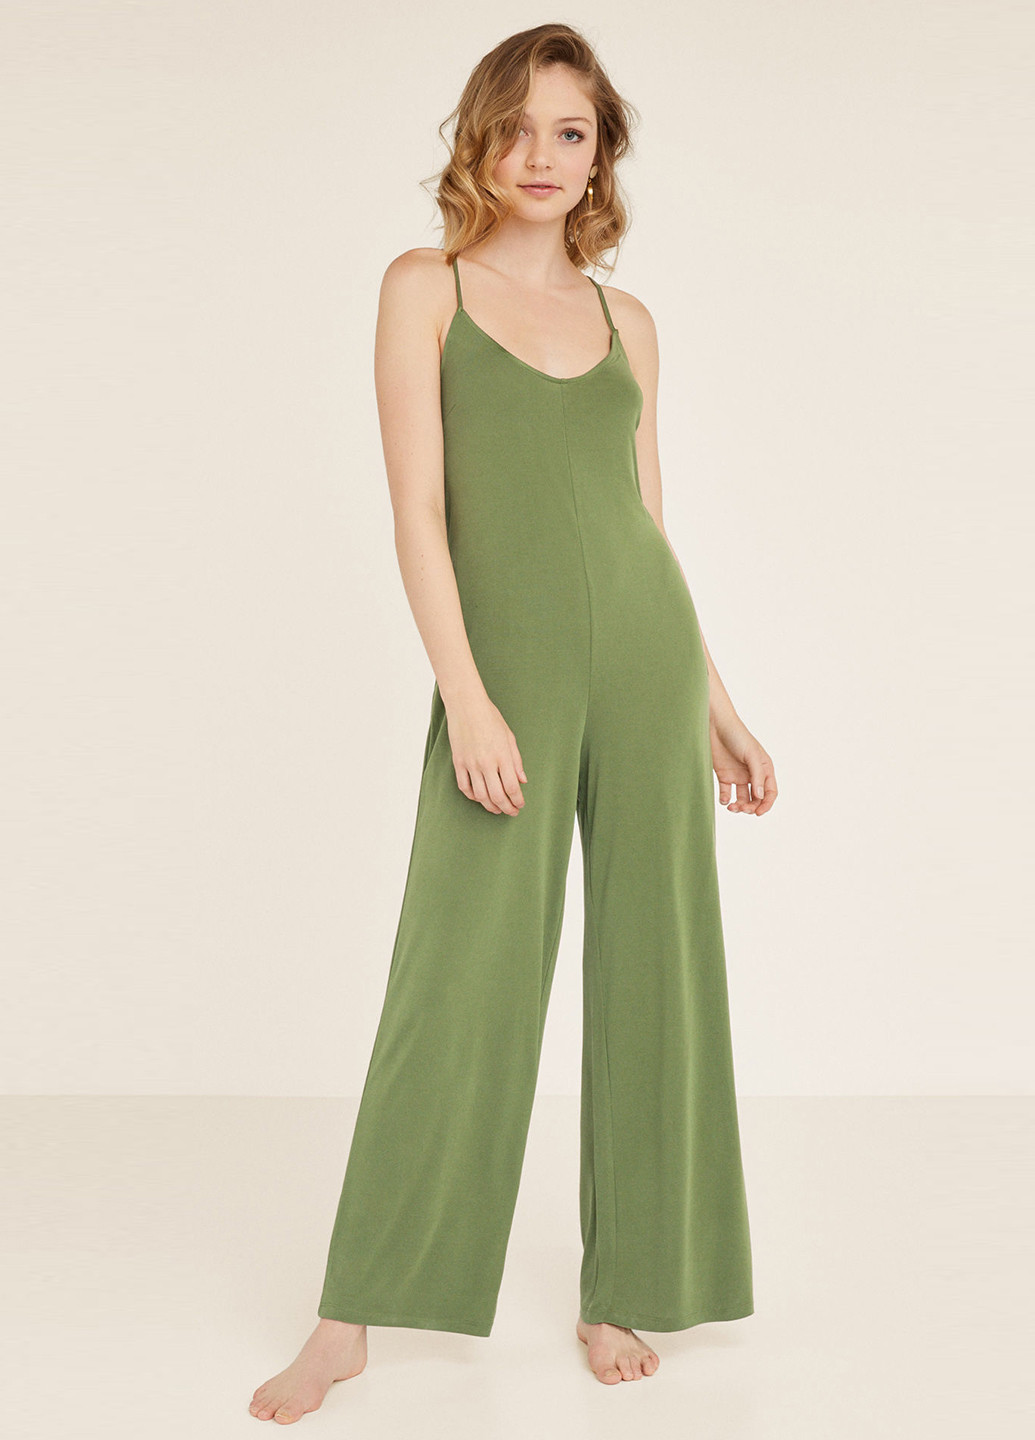 Комбинезон Women'secret комбинезон-брюки однотонный светло-зелёный домашний трикотаж